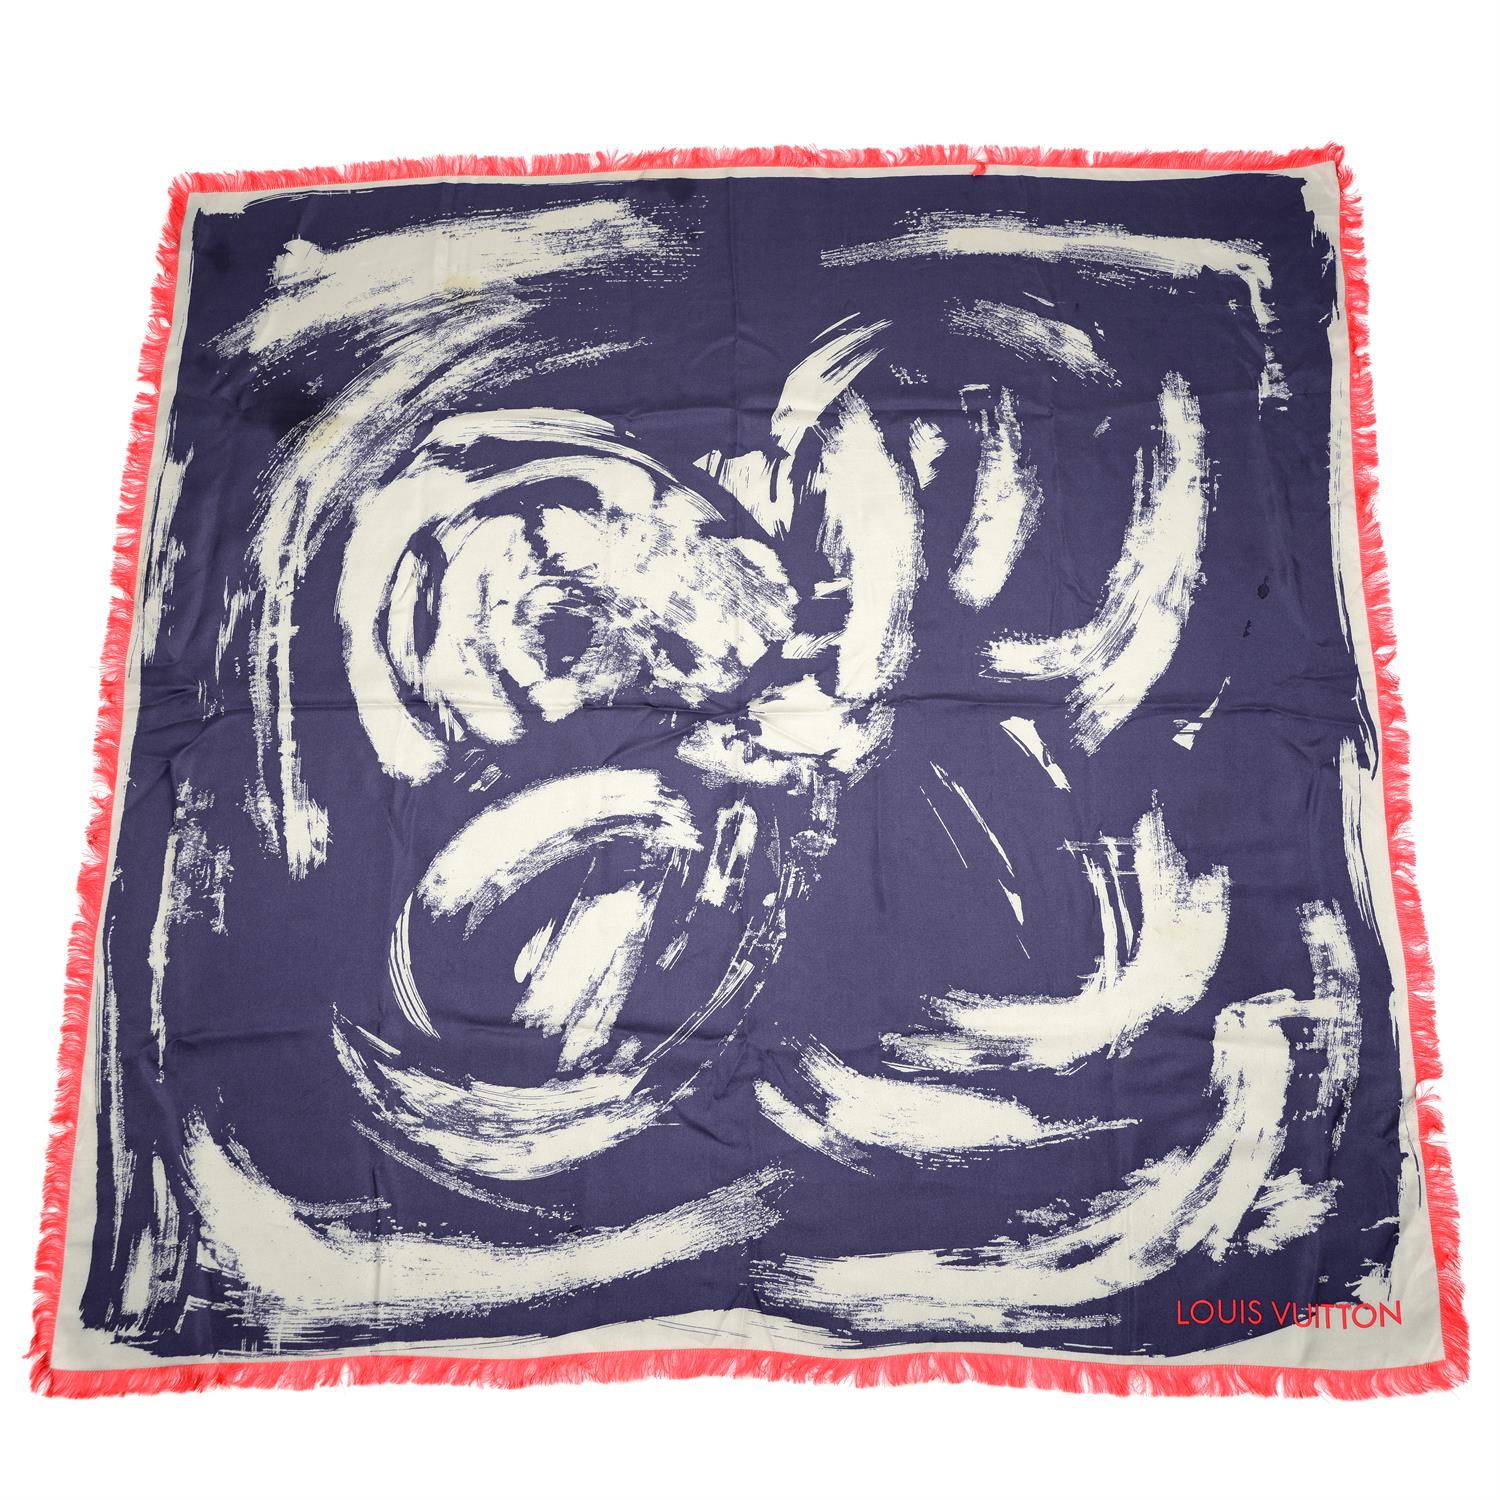 LOUIS VUITTON - a blue abstract print silk scarf.